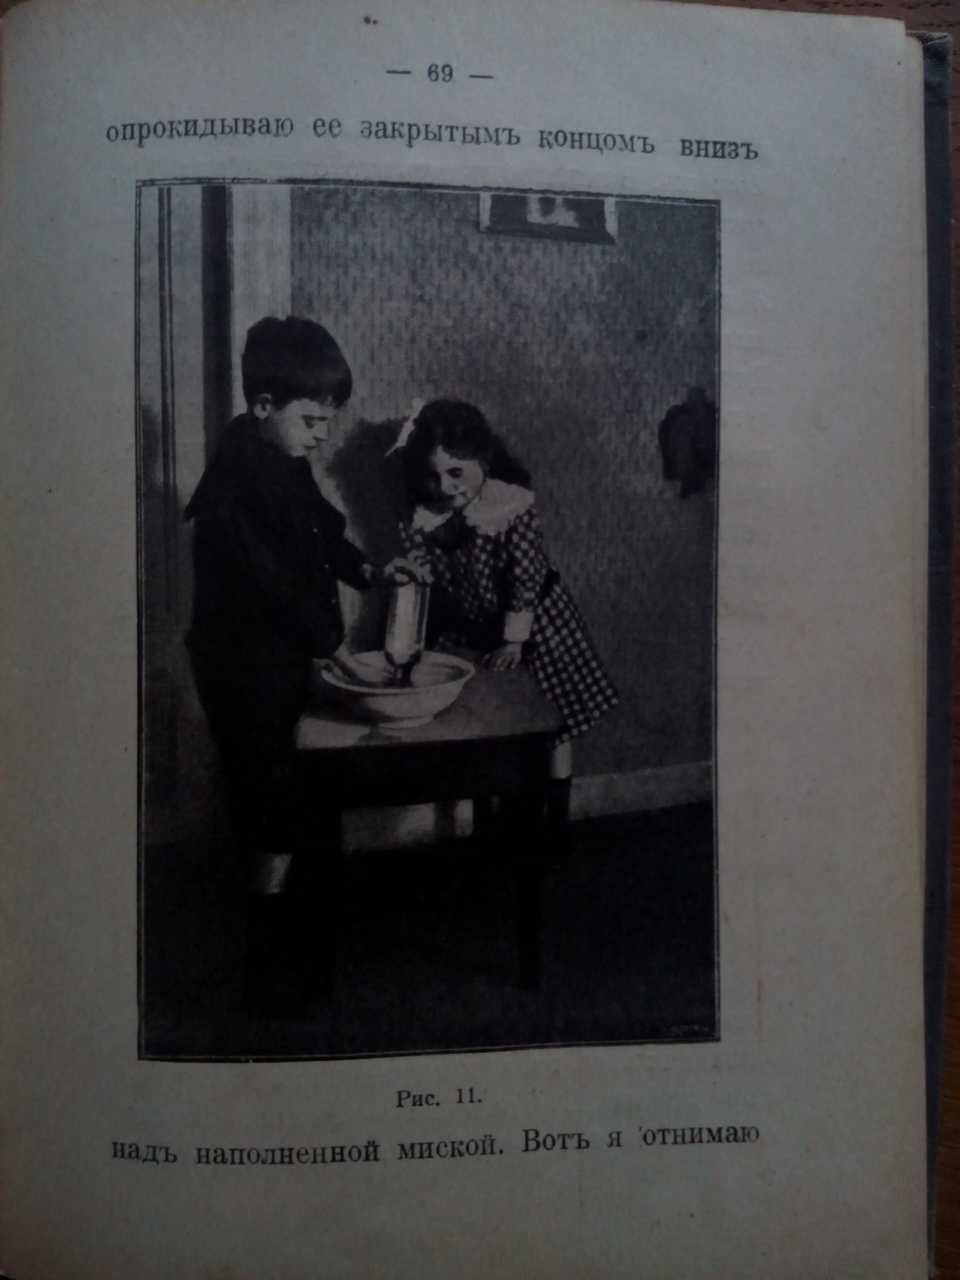 Химия Маленькие химики 1915г. Наука и забава